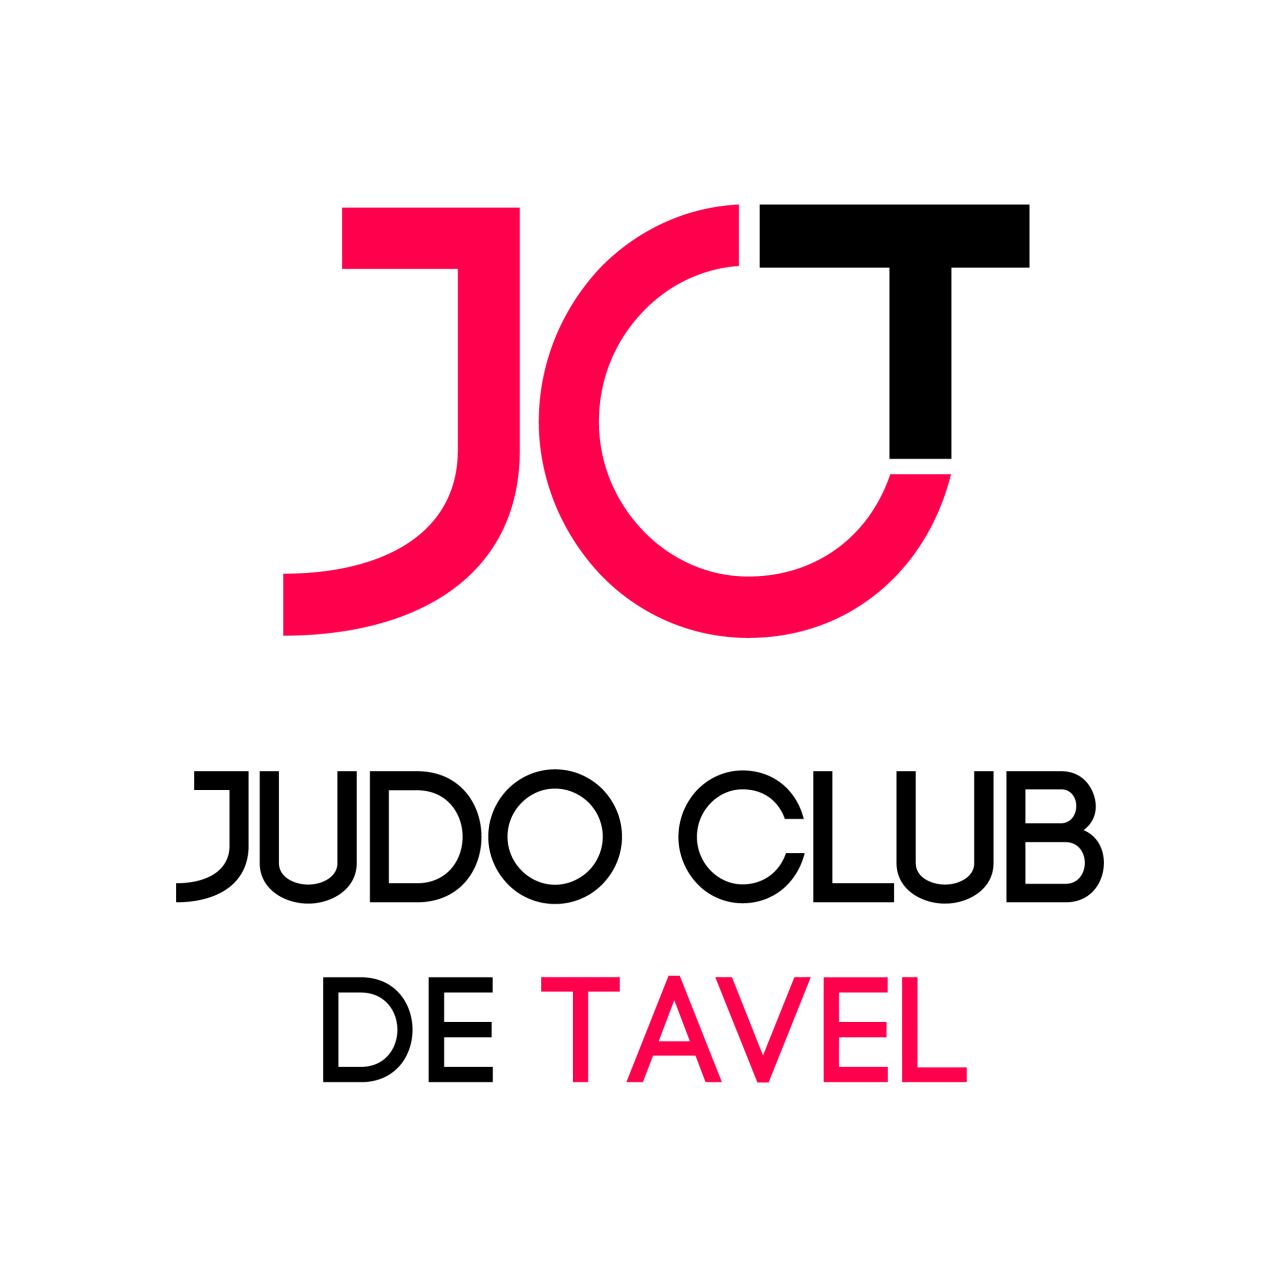 JUDO CLUB DE TAVEL